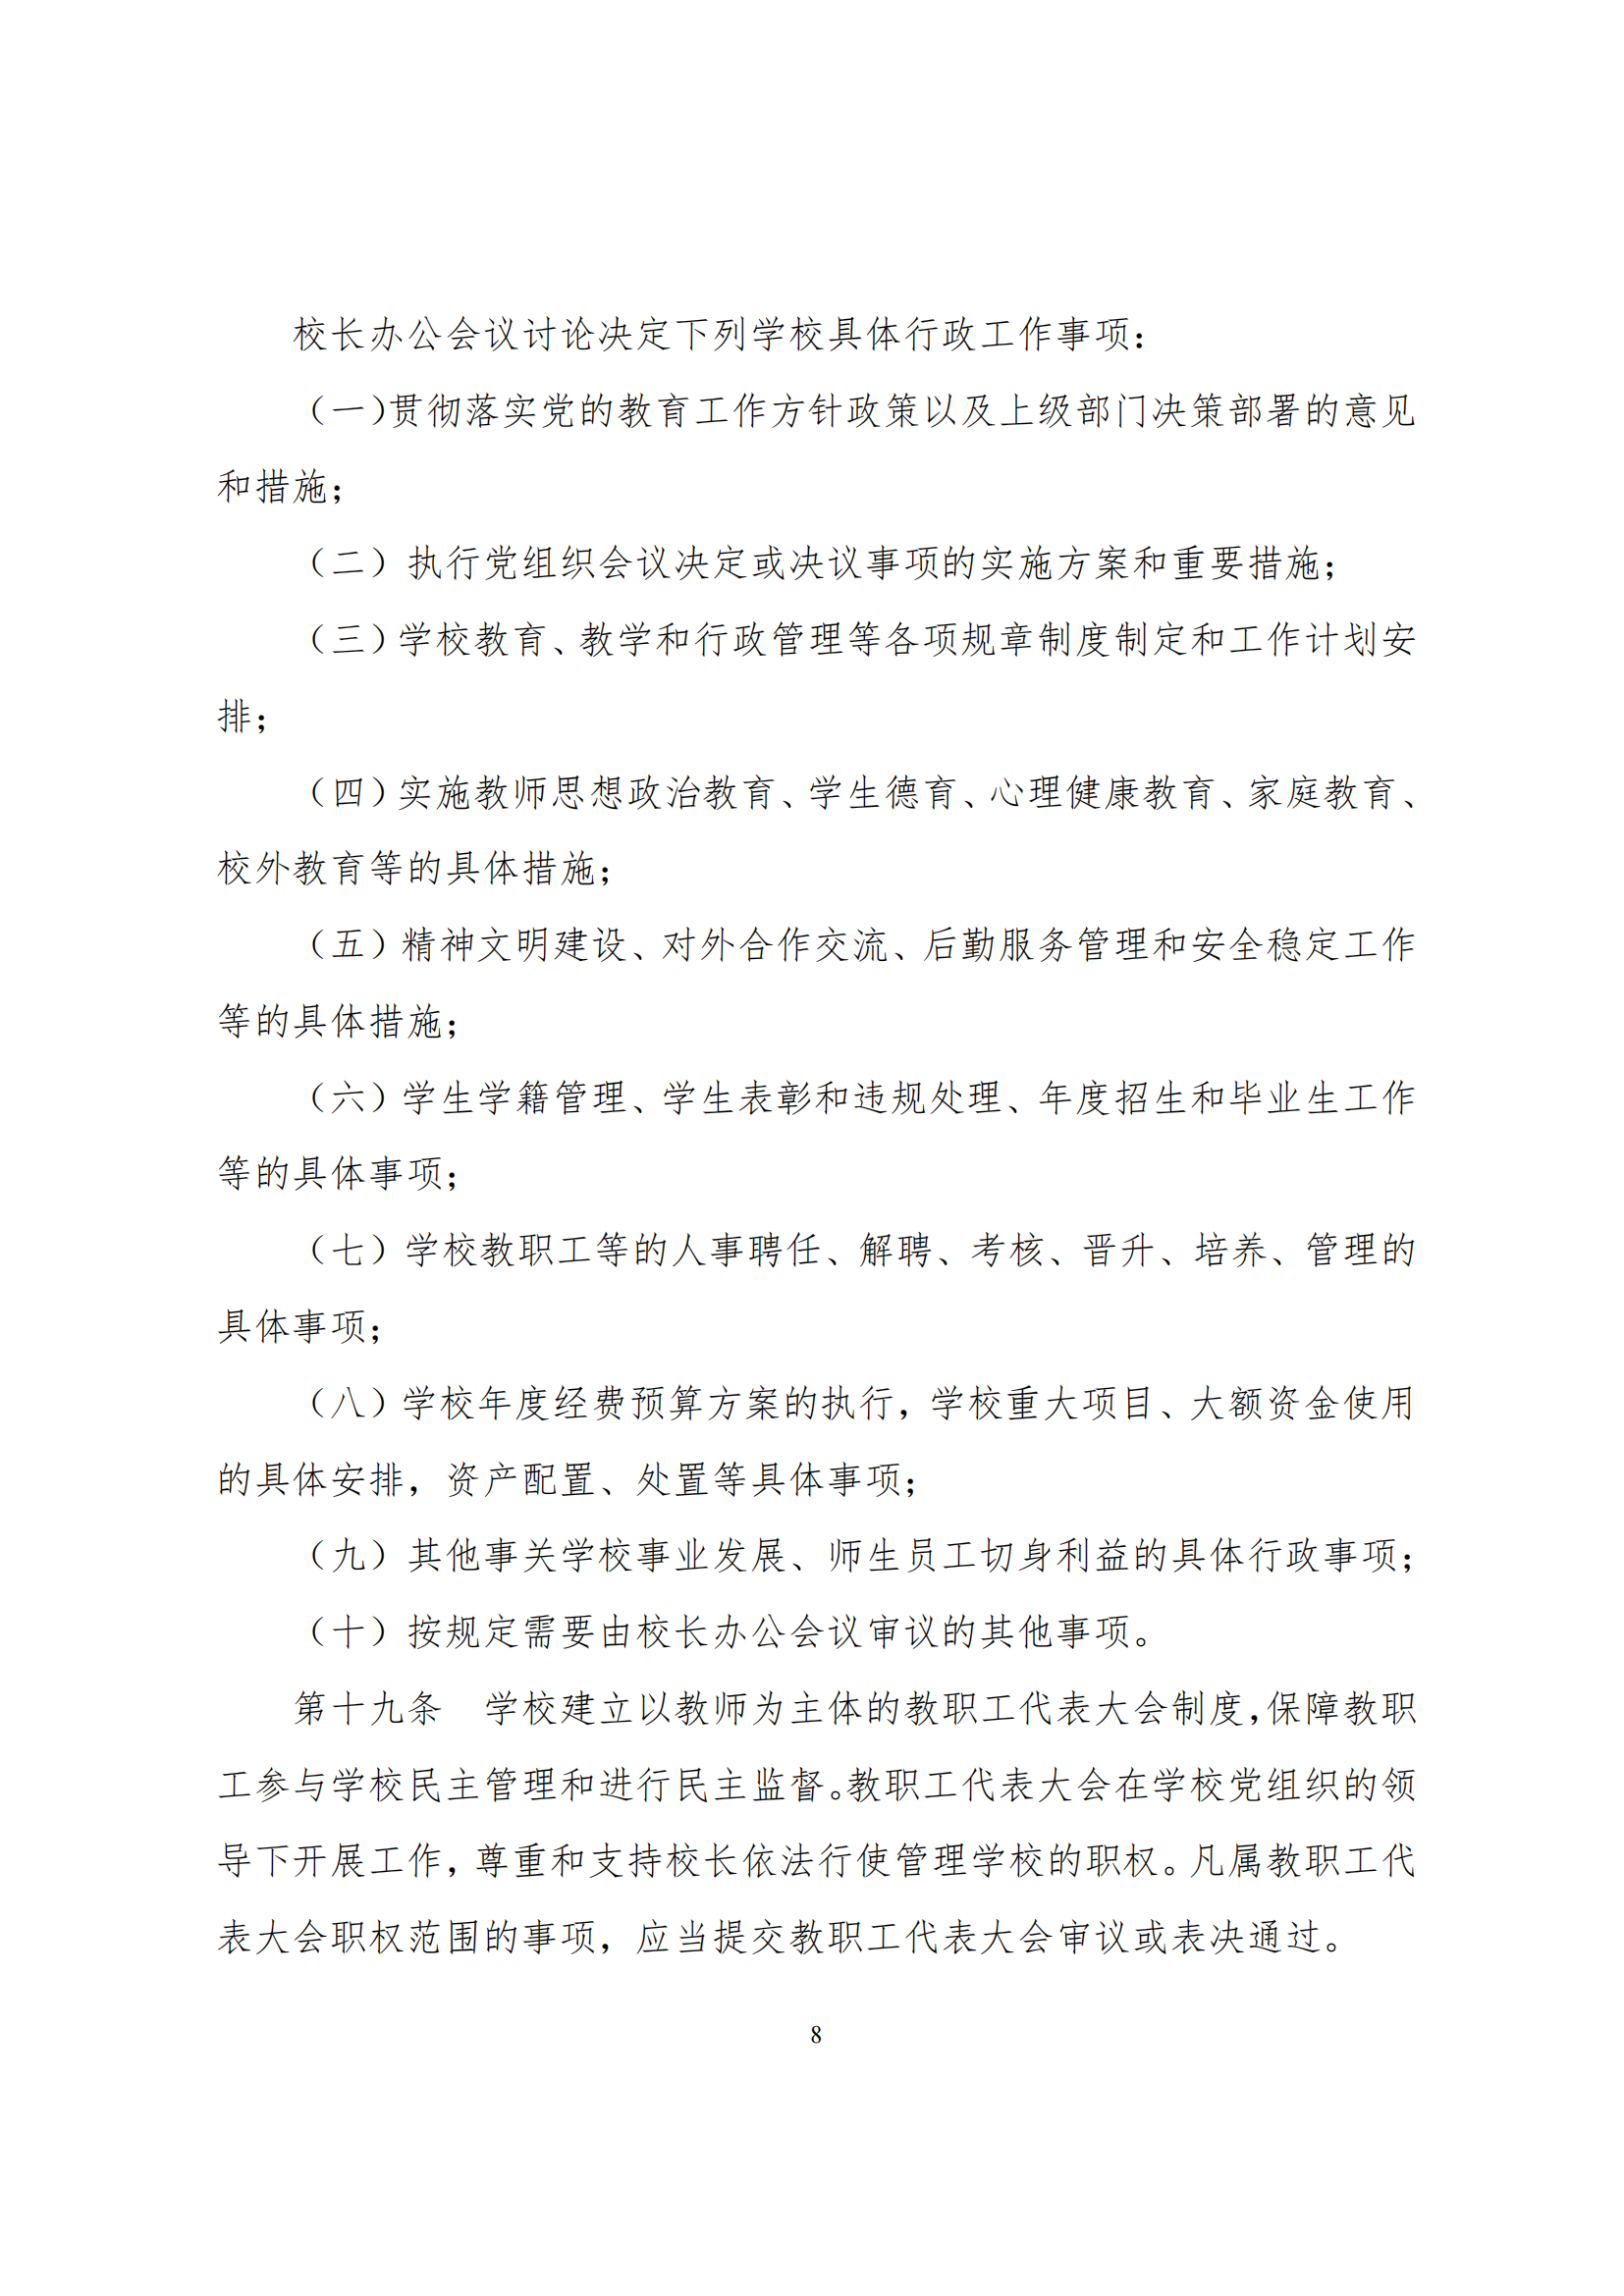 上海市徐汇区求知小学学校章程（提交稿）_07.png